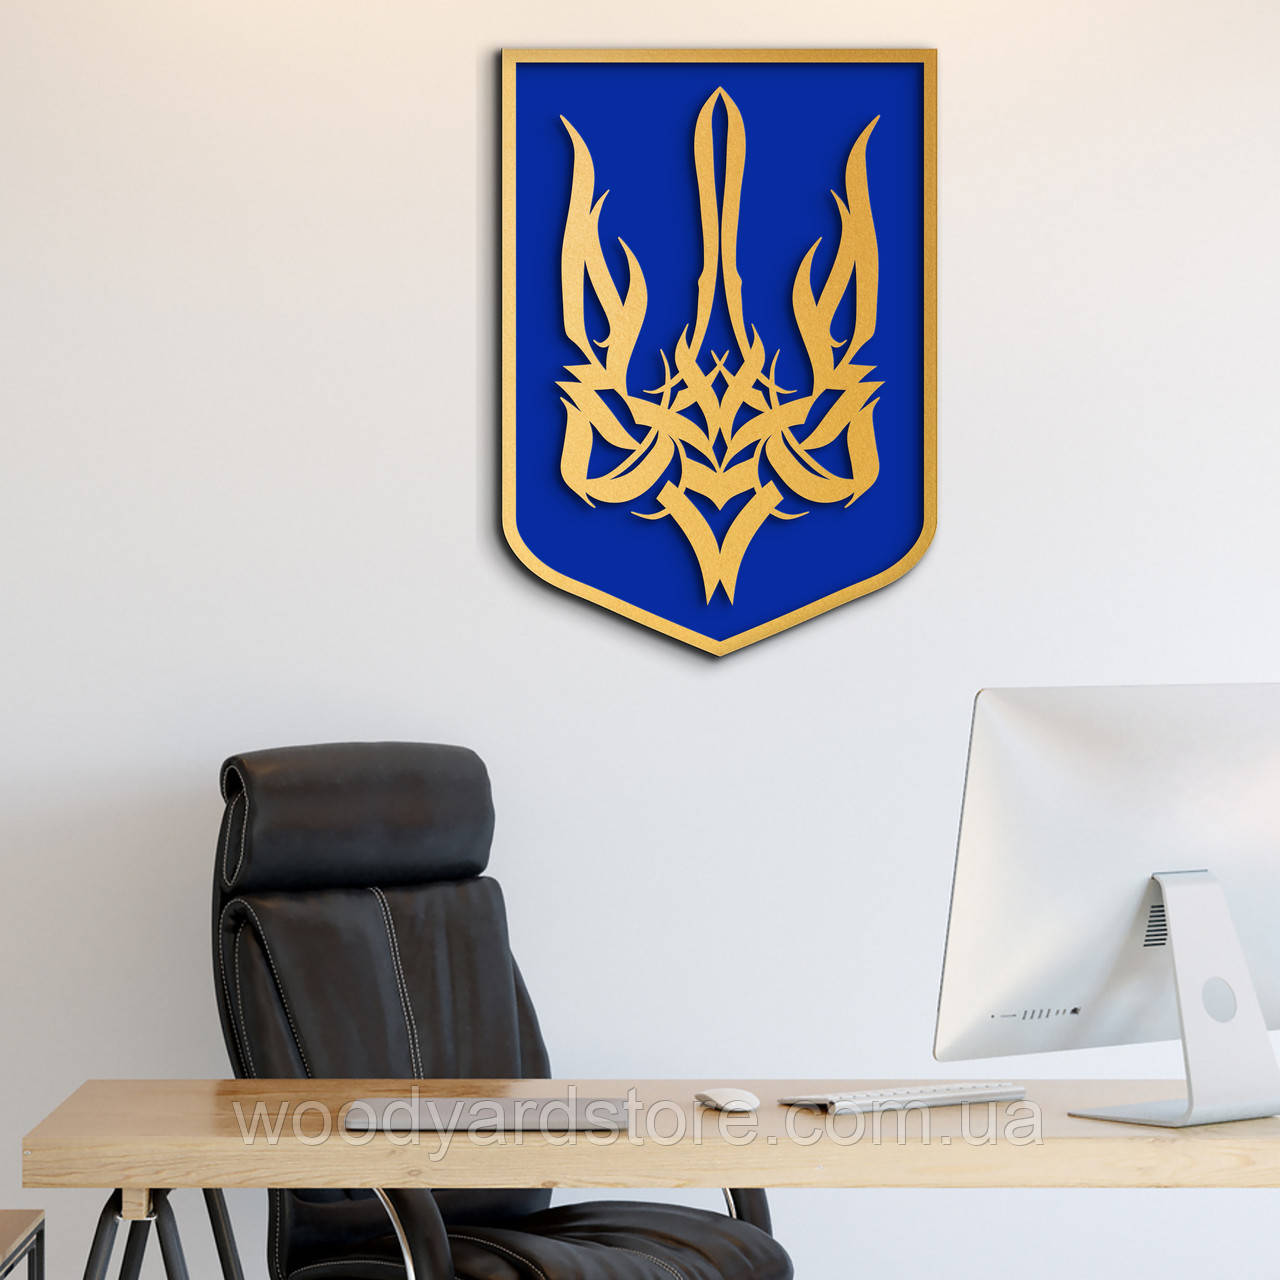 Національний Герб України, тризуб офісний, настінний декор для кімнати 25x18 см, золотий герб на синьому щиті